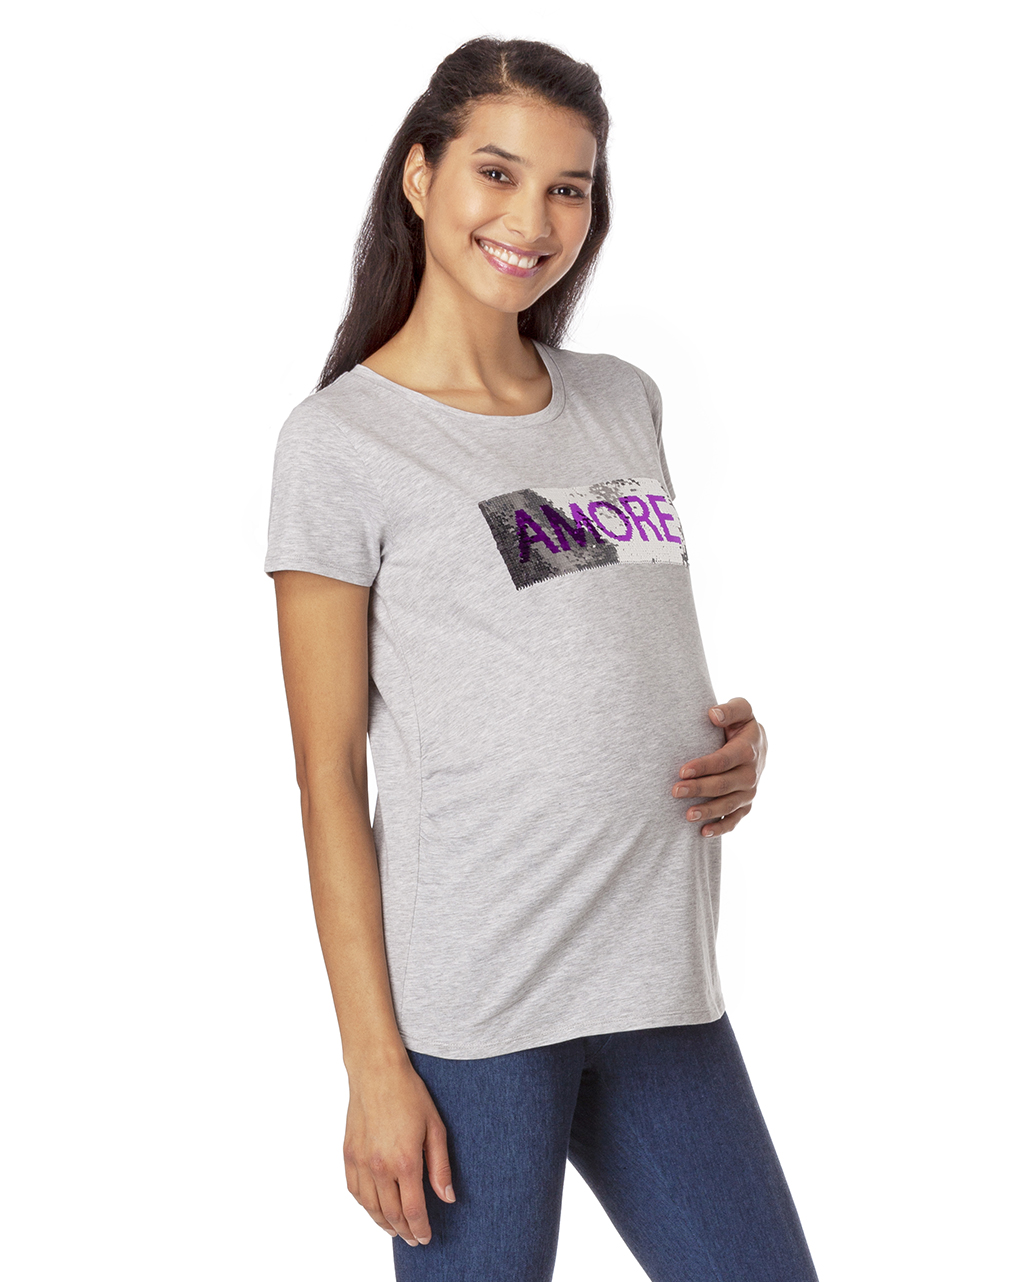 γυναικείο t-shirt εγκυμοσύνης με παγιέτες που αλλάζουν γκρι - Prénatal